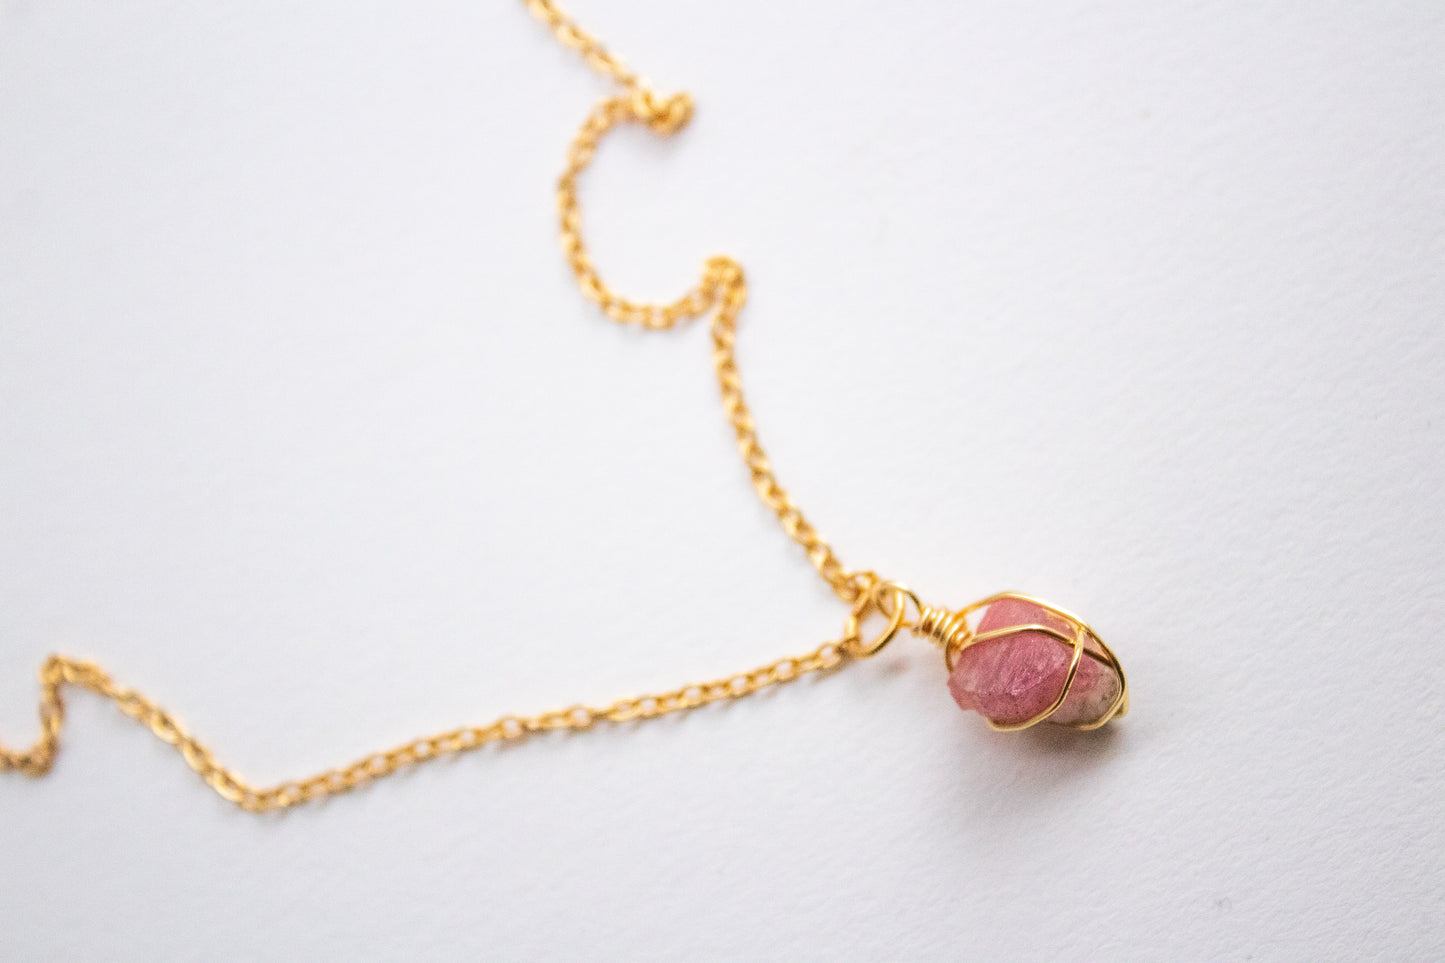 Sak. Minimalist necklace with pink tourmaline (rubellite)